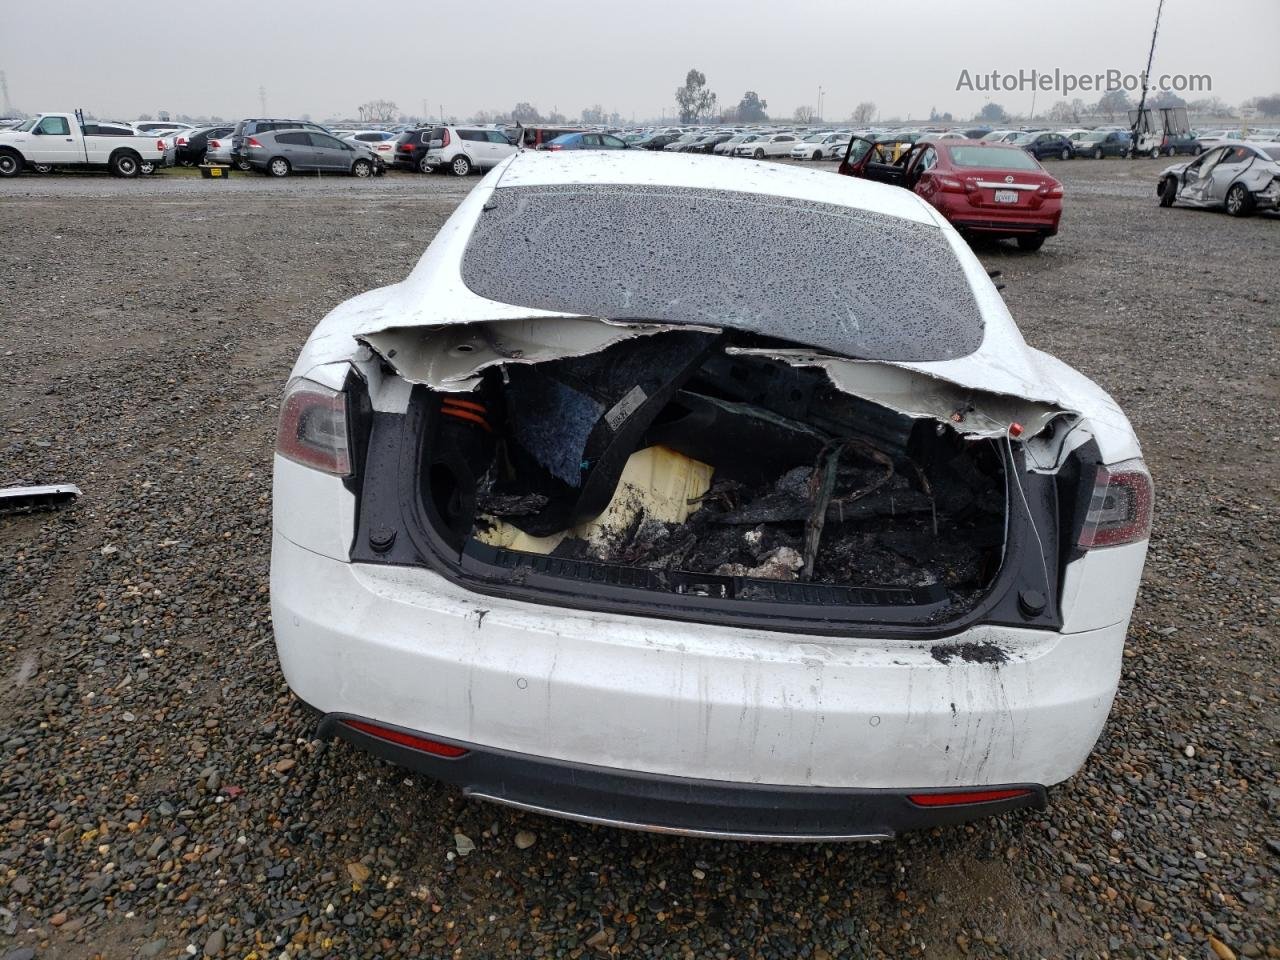 2015 Tesla Model S 70 White vin: 5YJSA1S19FFP78406